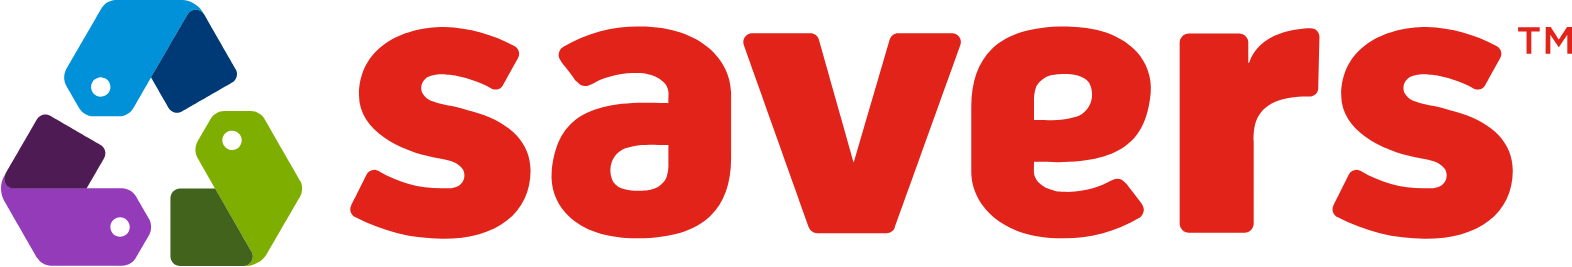 Savers Value Village logo large (transparent PNG)